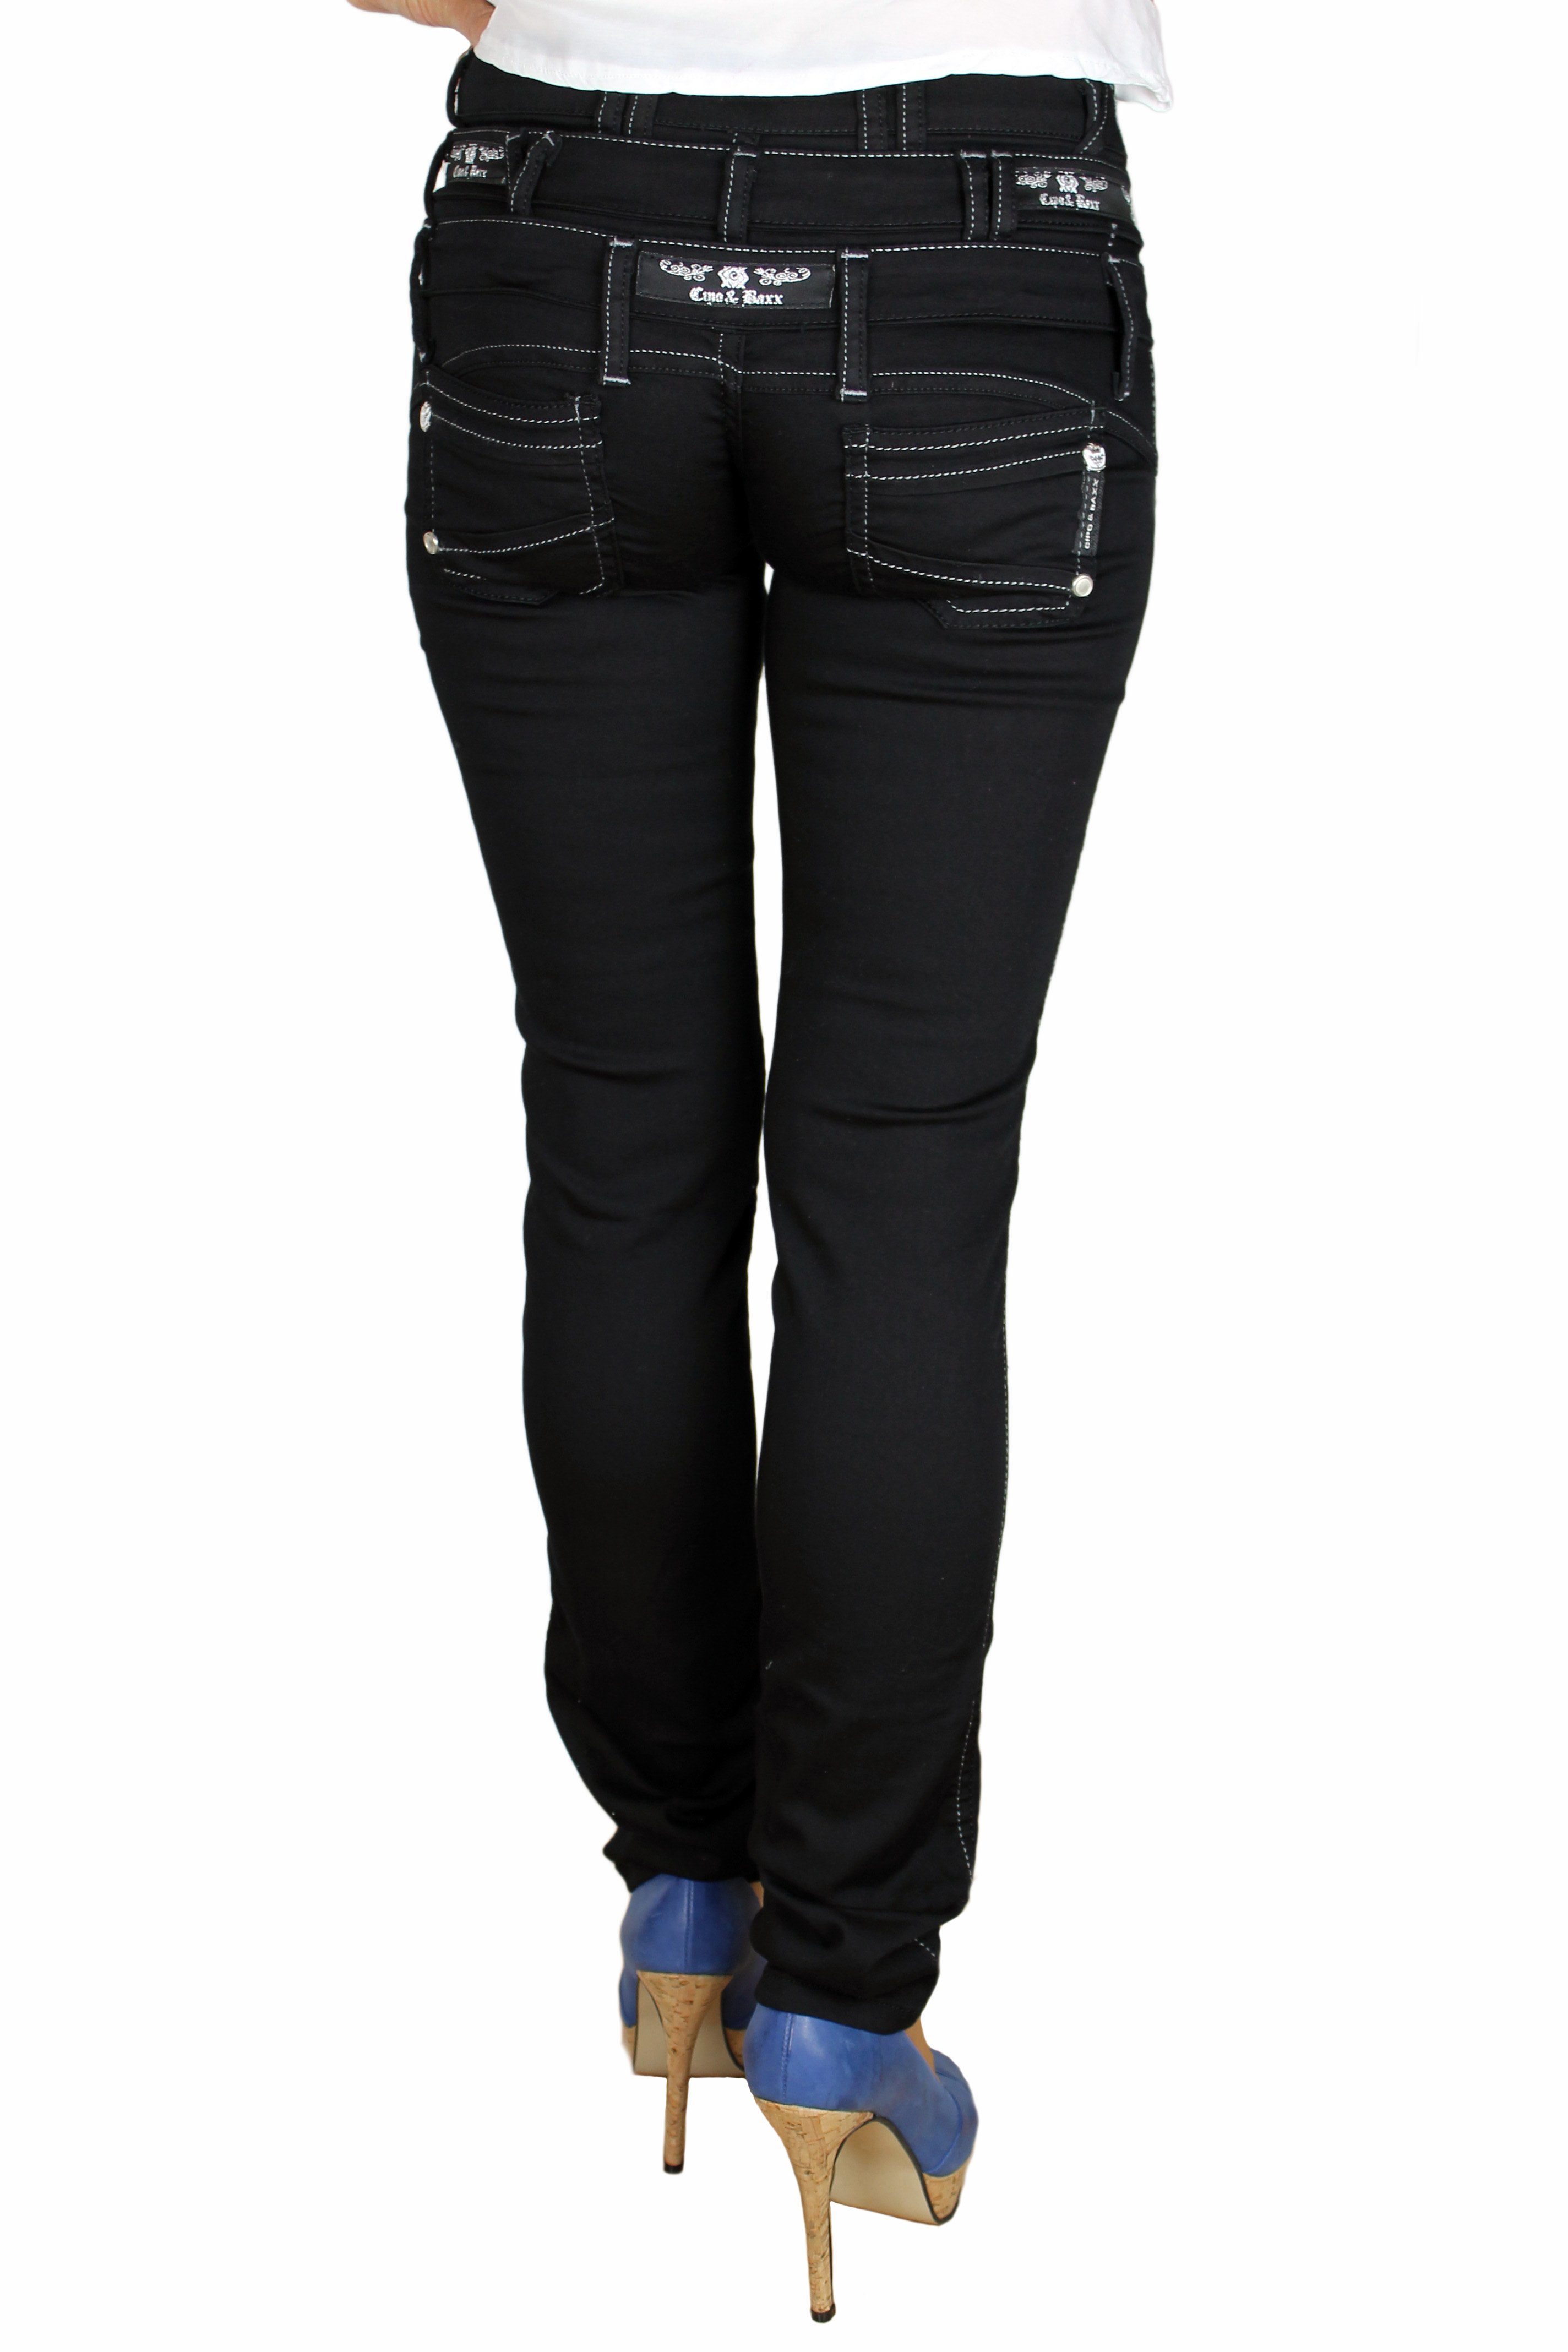 Cipo & Baxx angenehmer mit Design außergewönlichem dreifacher Jeans Gürtelschlaufenanreihung, im Jeans Tragekomfort Hose Straight-Jeans